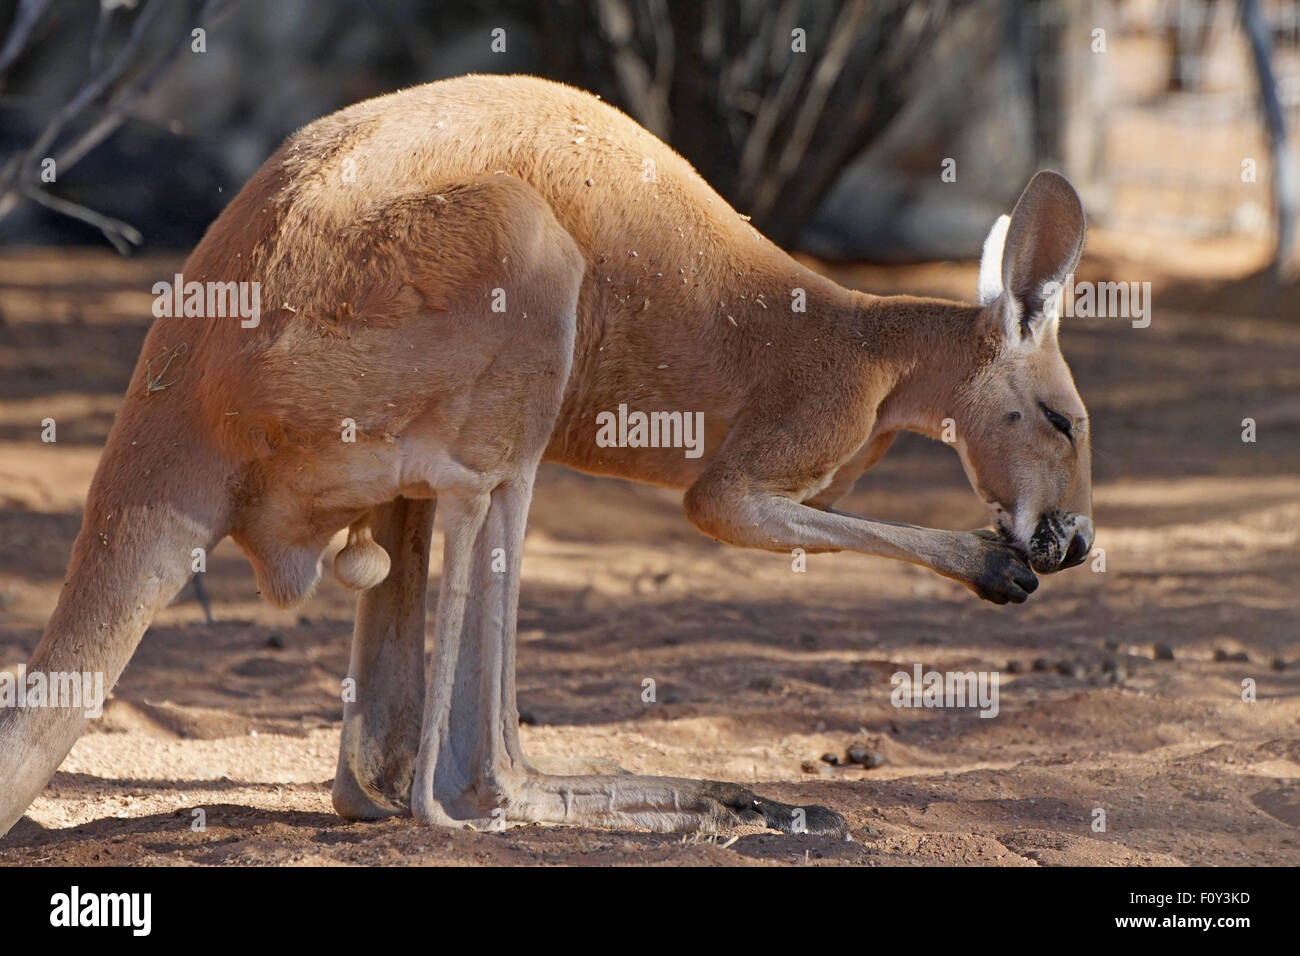 Kangourou rouge, Territoire du Nord, de l'Australie Outback Banque D'Images